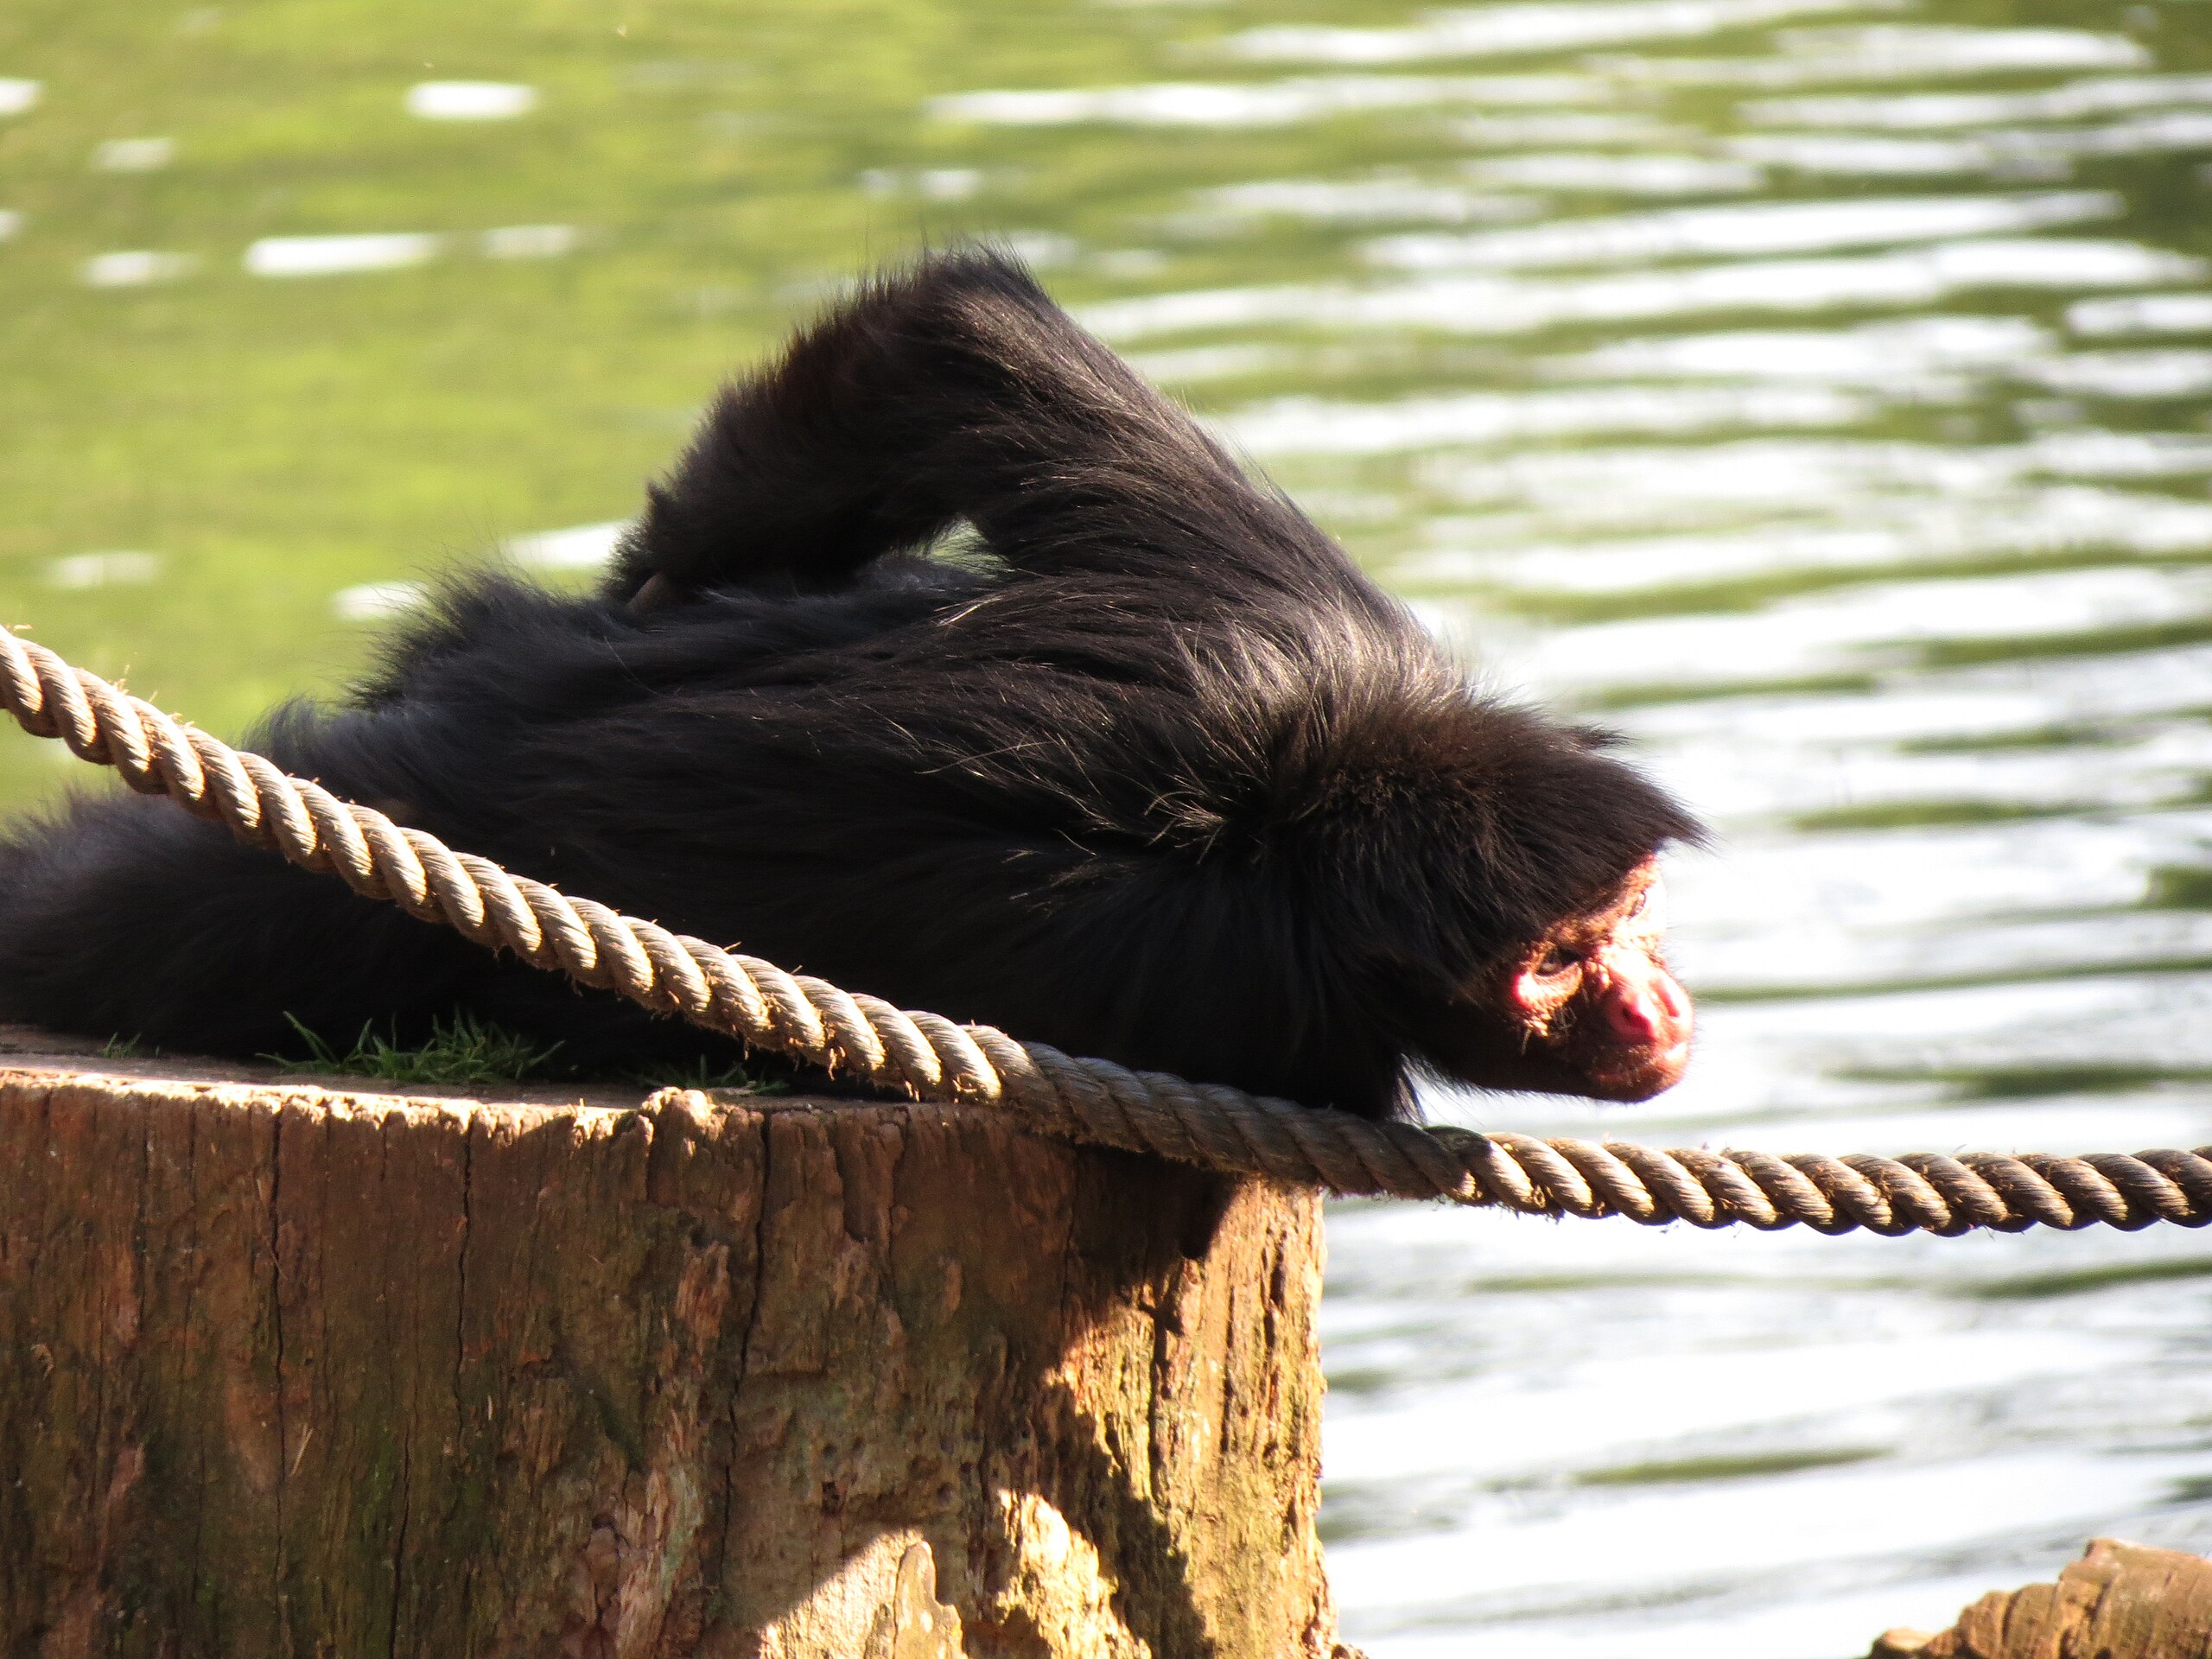 File:Macaco-aranha-de-cara-vermelha-2.jpg - Wikimedia Commons